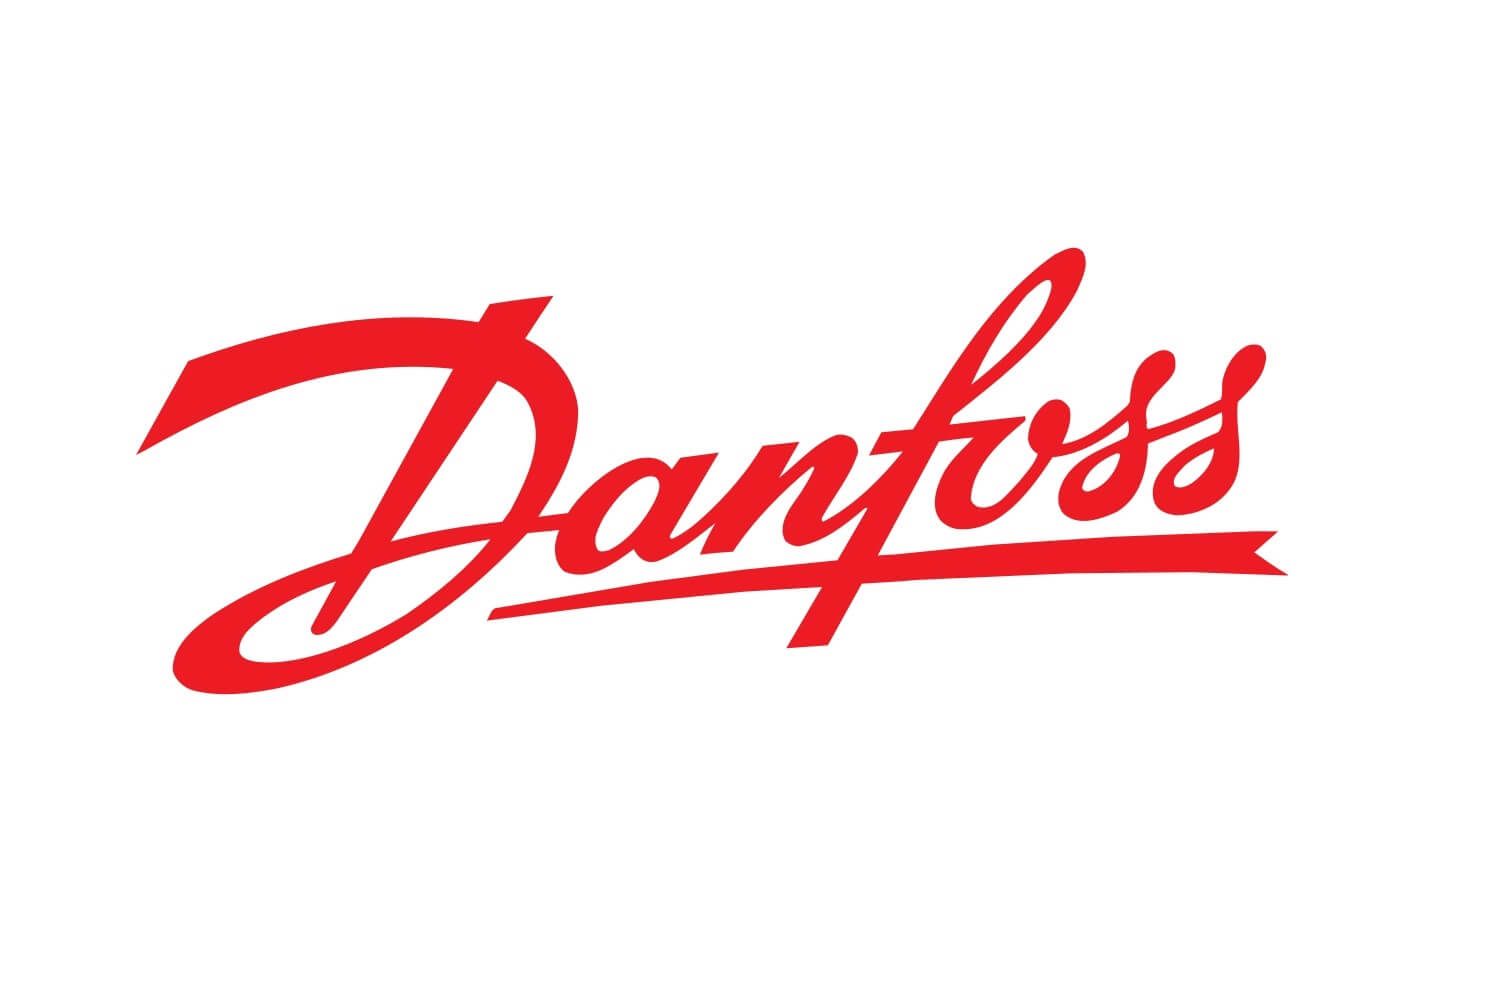 Danfoss Image